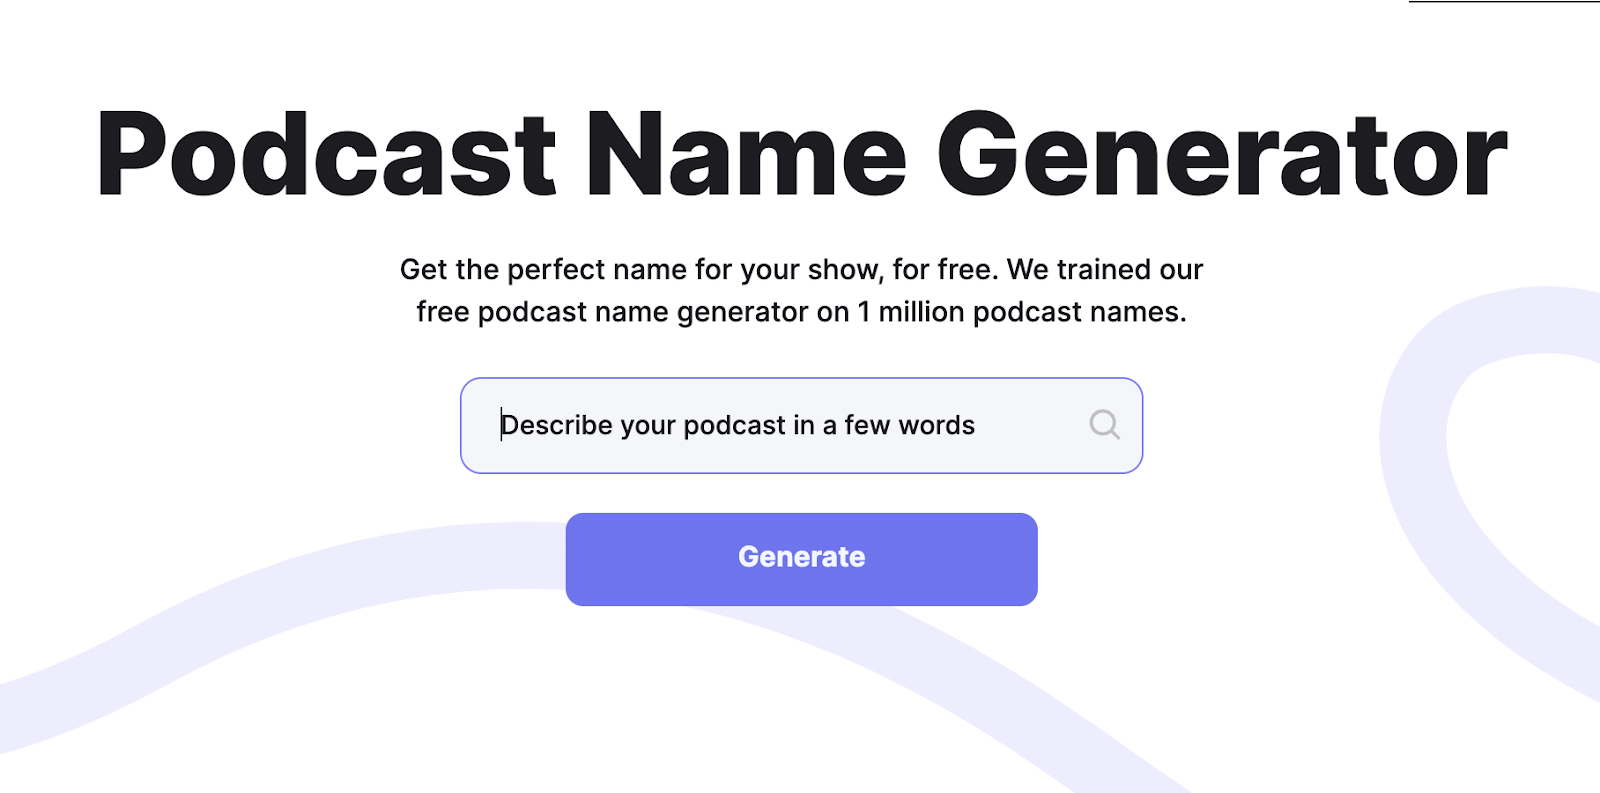 Riverside's podcast name generator